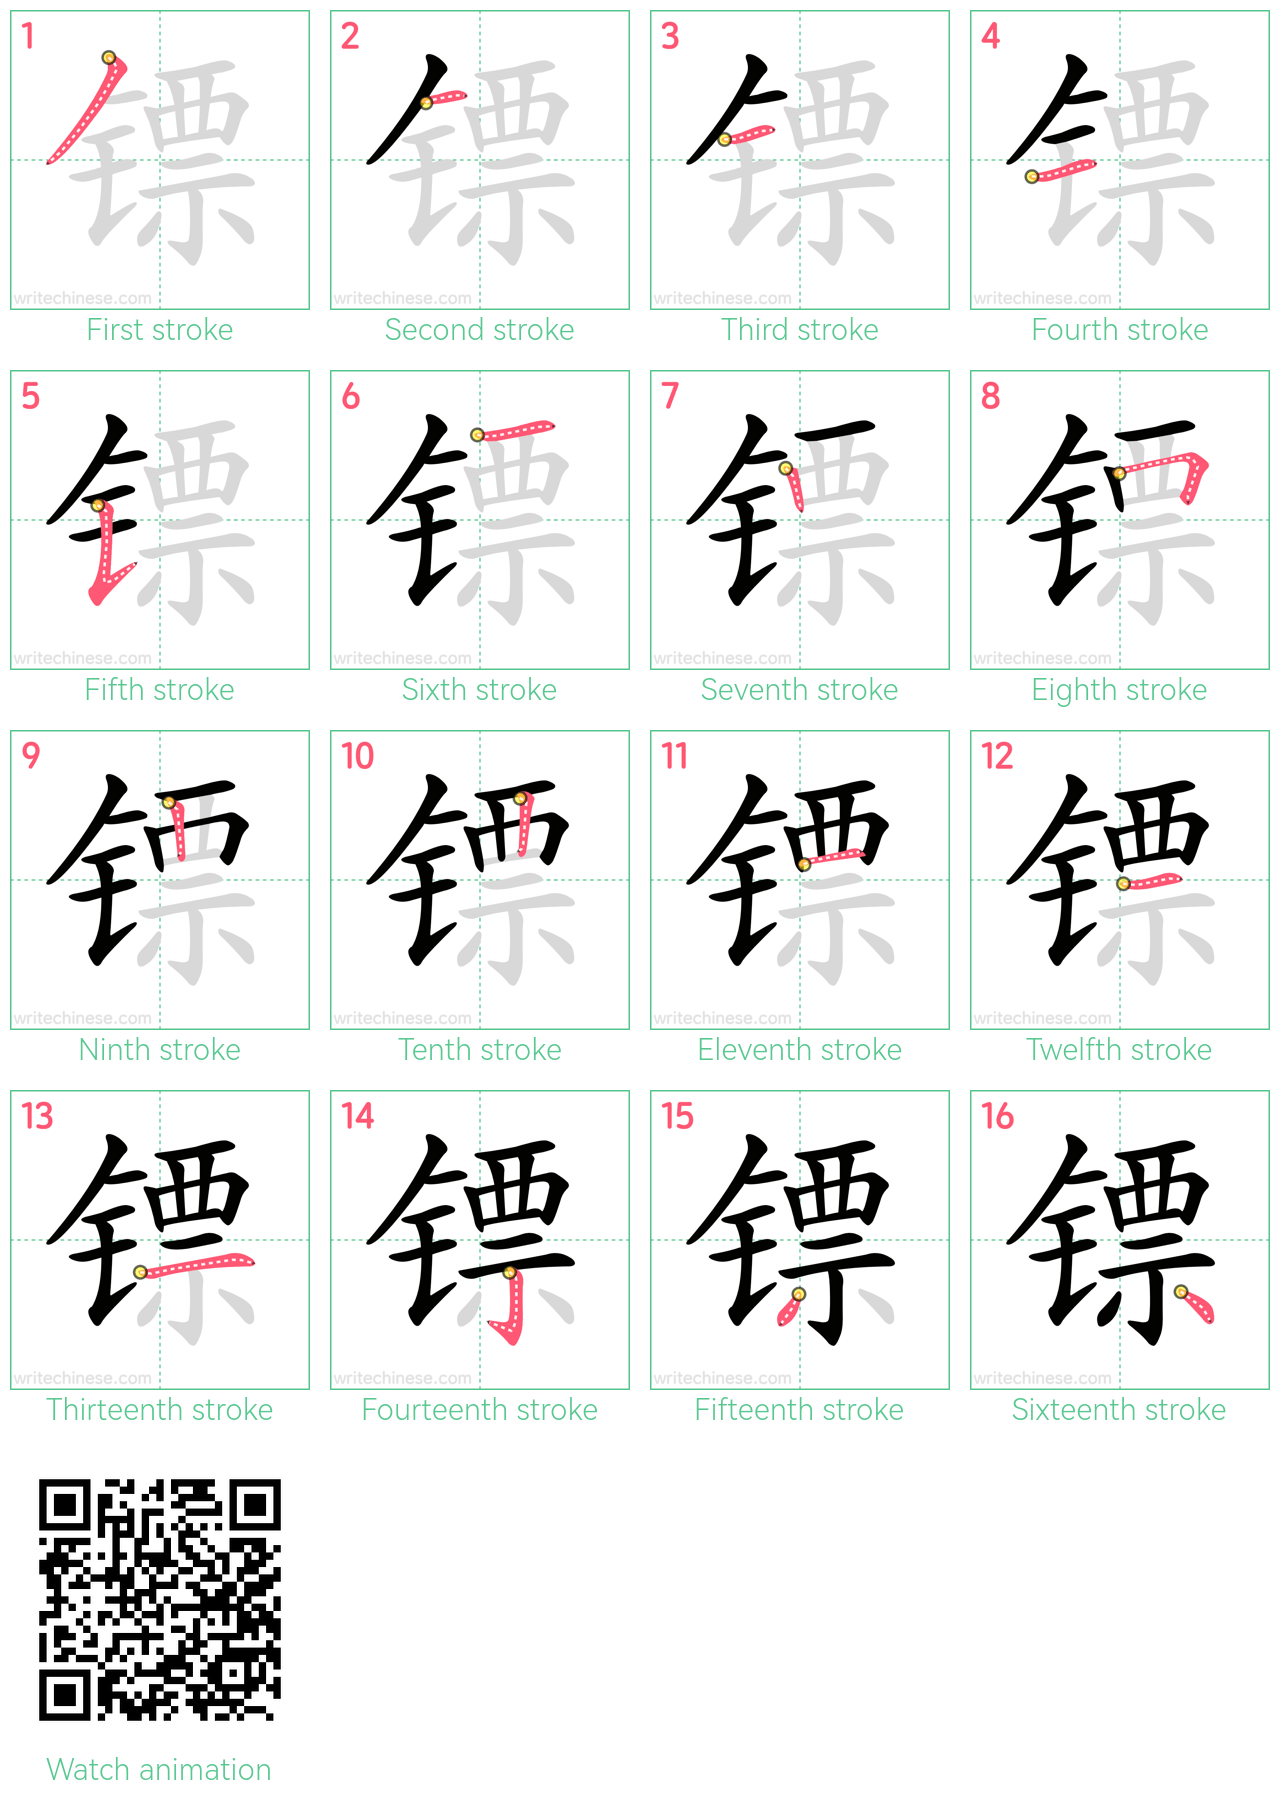 镖 step-by-step stroke order diagrams